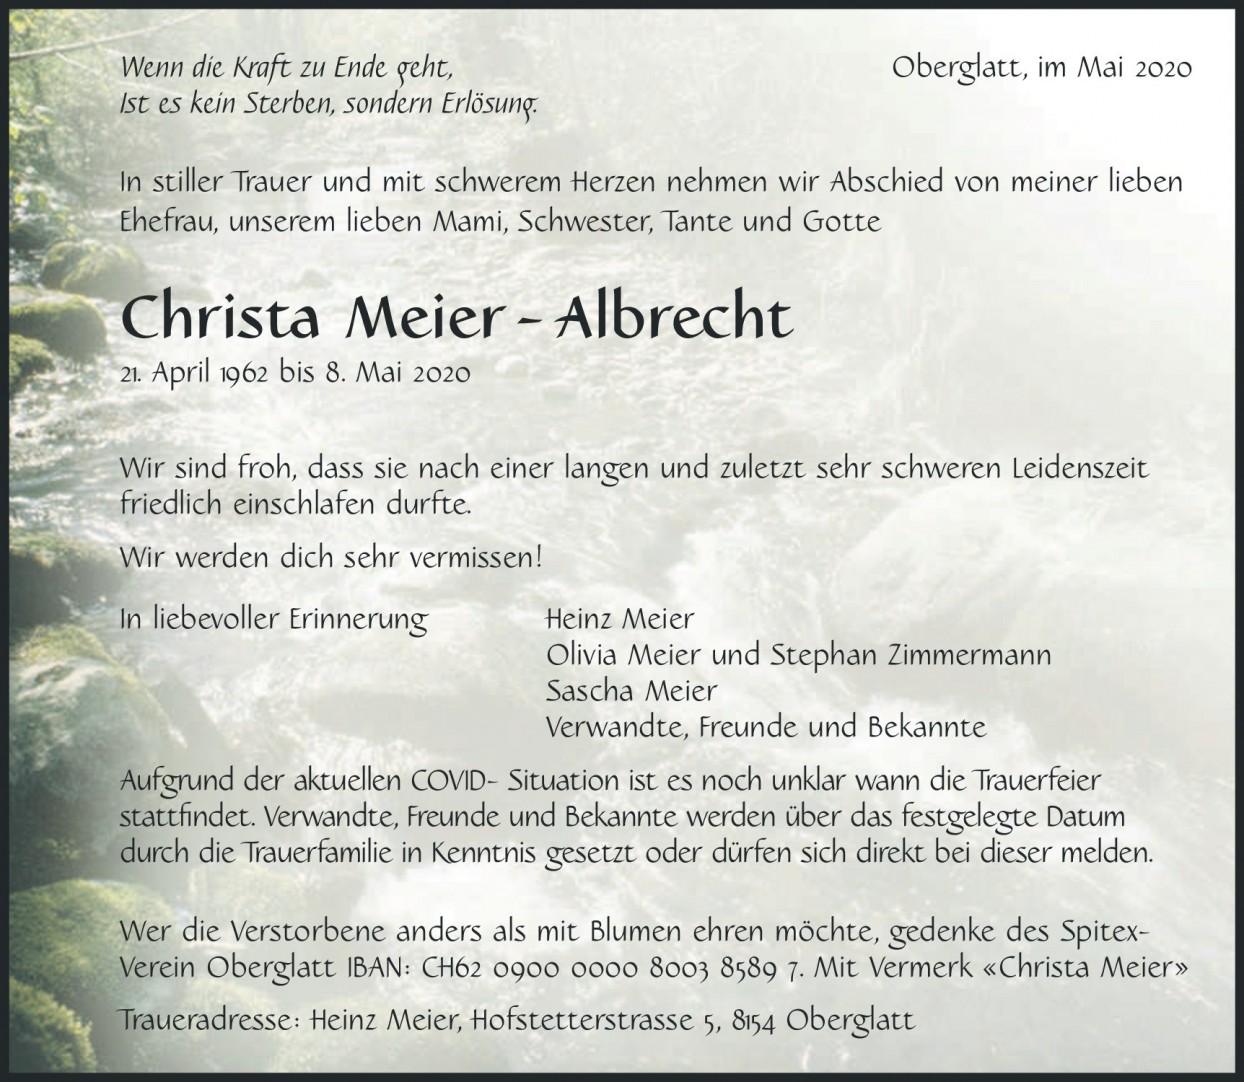 Christa Meier-Albrecht